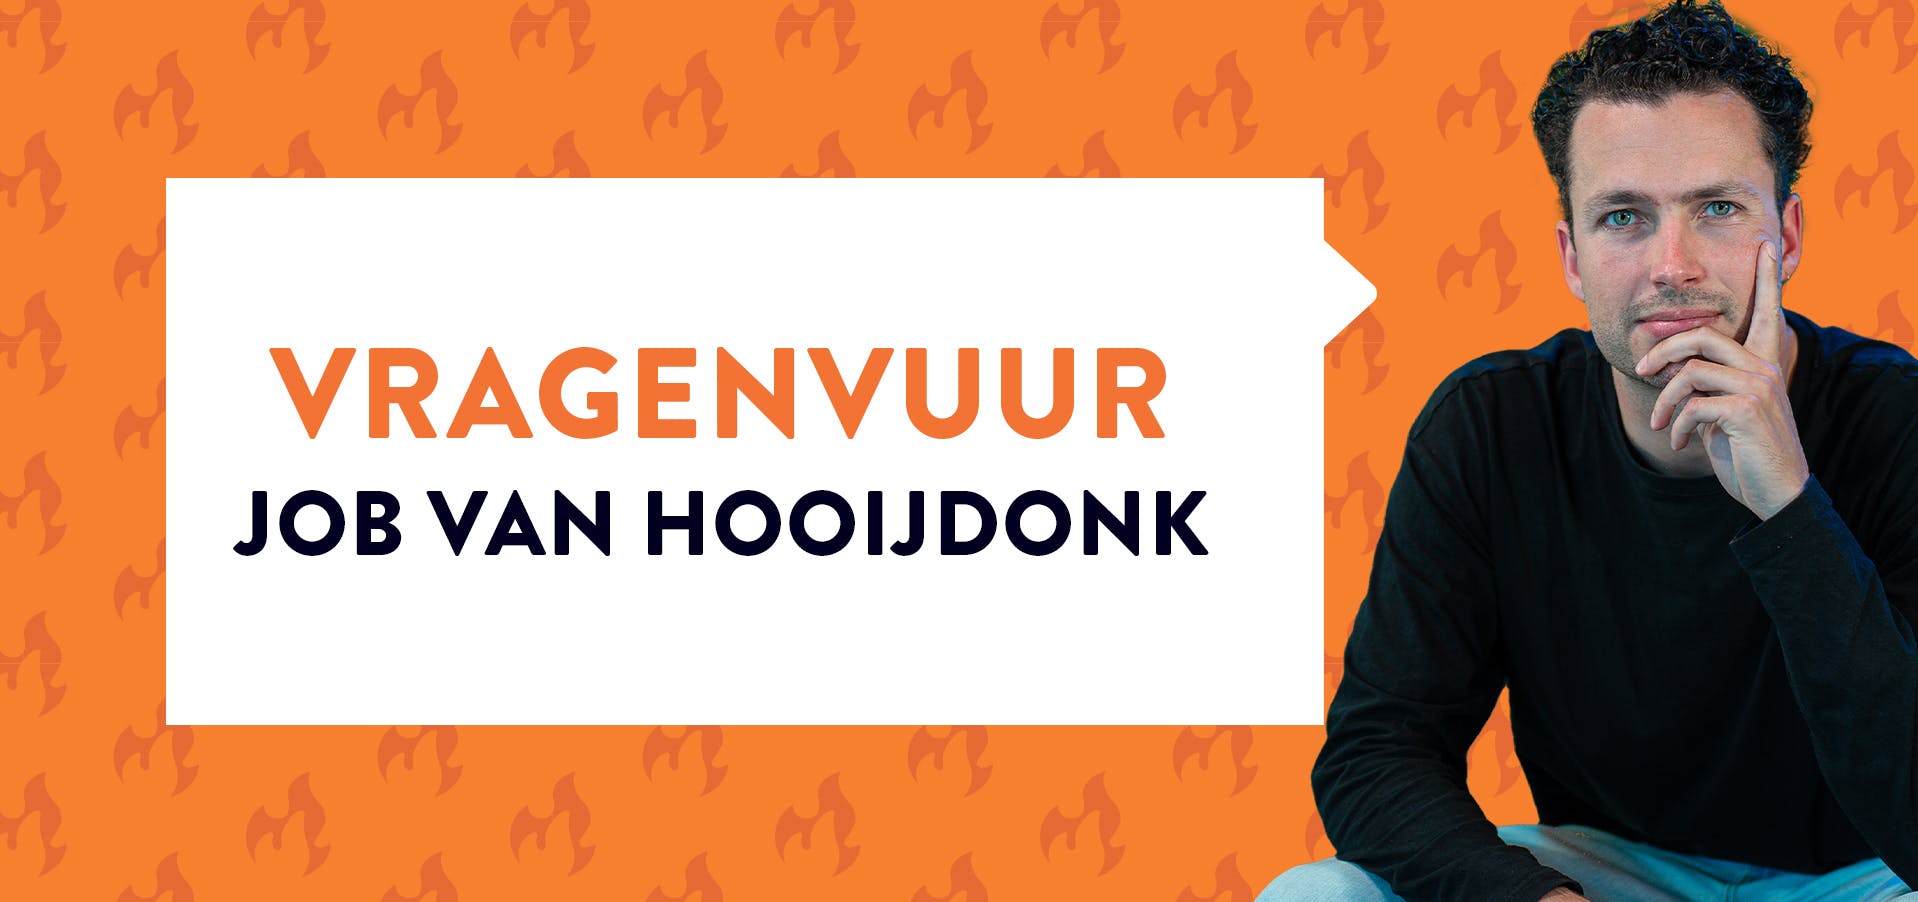 Job van Hooijdonk poserend in zwarte sweater bij oranje achtergrond met tekst 'vragenvuur job van hooijdonk'